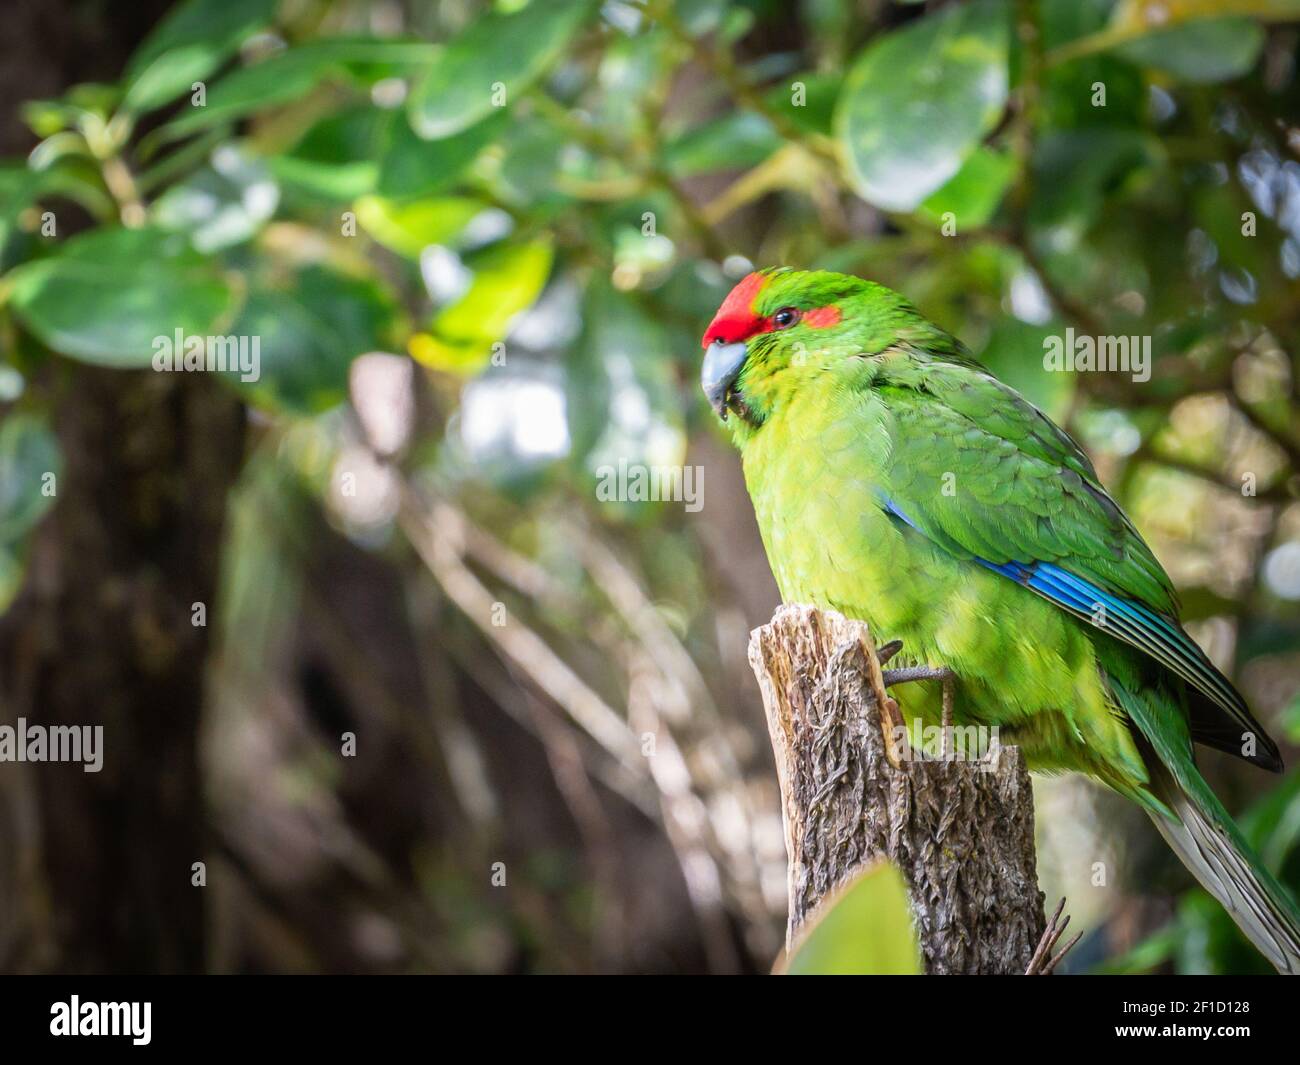 Raro pappagallo nativo nel suo habitat naturale. Girato sull'Isola di Ulva, nella zona di Stewart Island (Rakiura), Nuova Zelanda Foto Stock